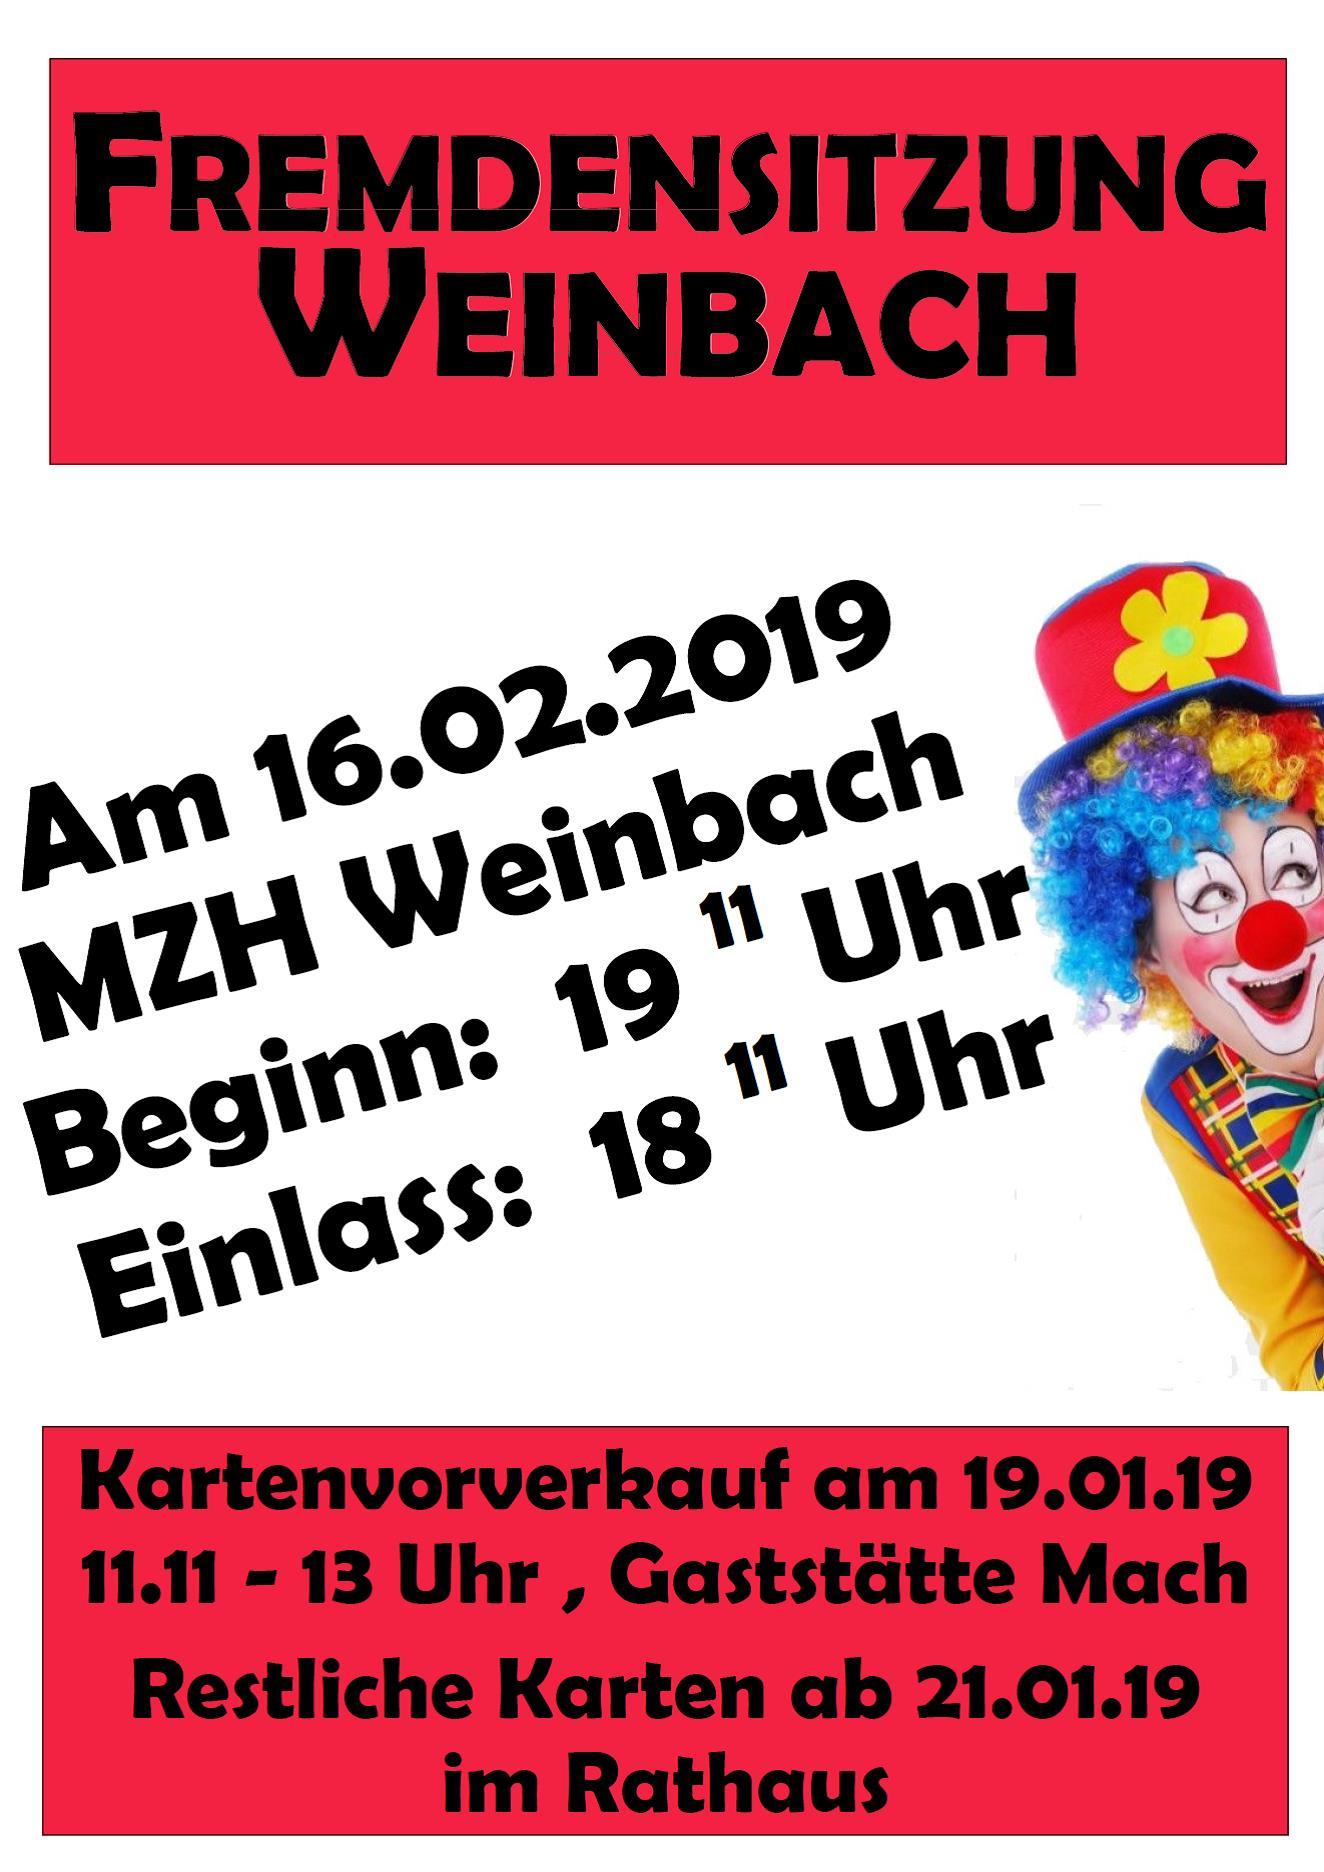 Fremdensitzung Weinbach 2019